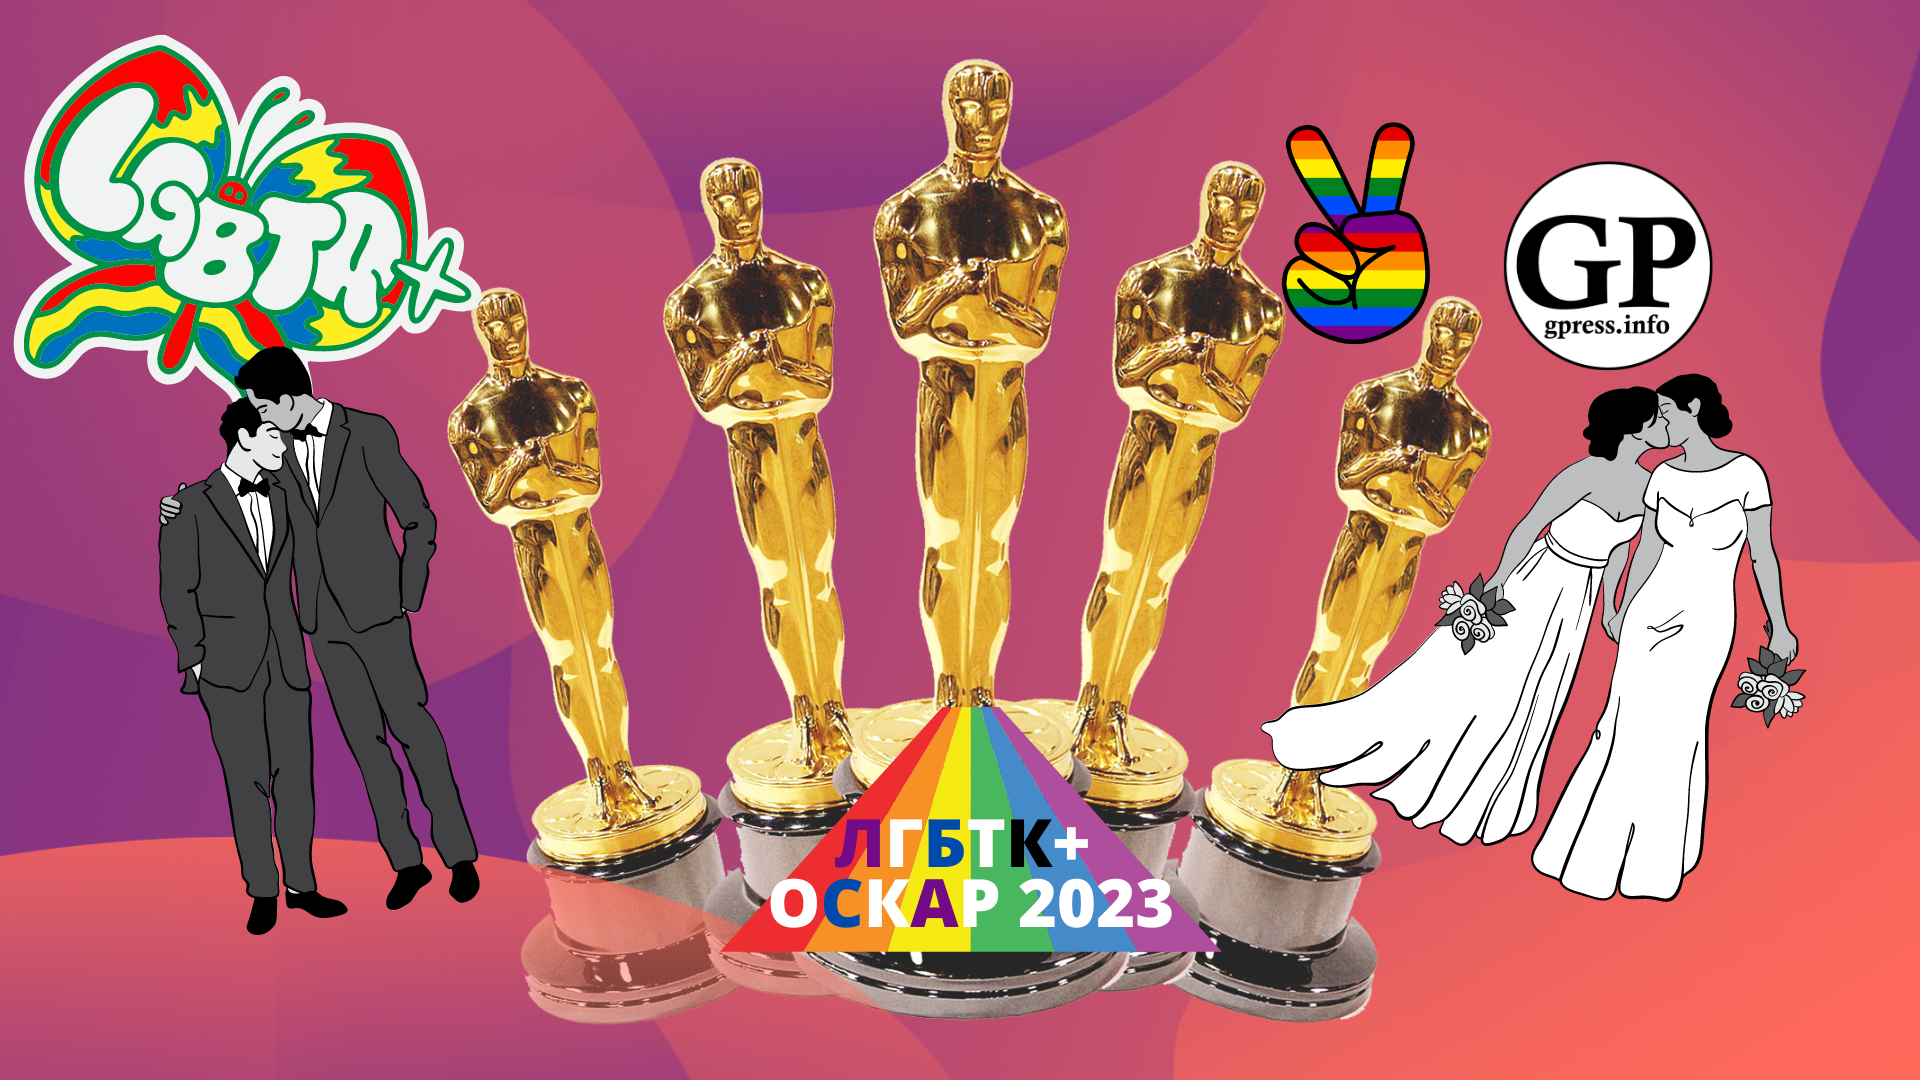 Оскар 2023: вот все ЛГБТК+ фильмы этого года